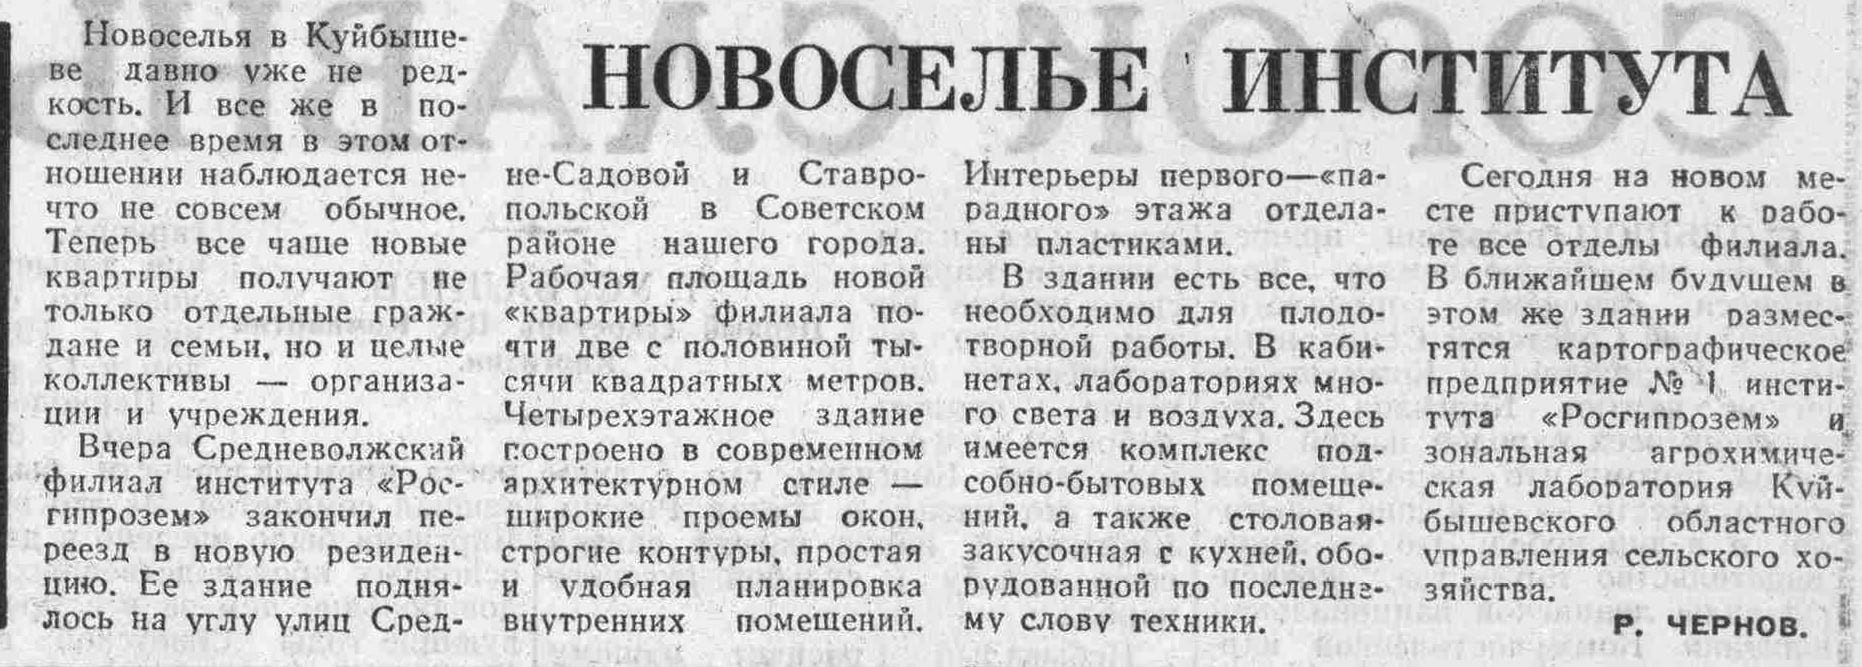 Ставропольская-ФОТО-36-ВКа-1966-10-28-новоселье Гипрозема на СрСад-min